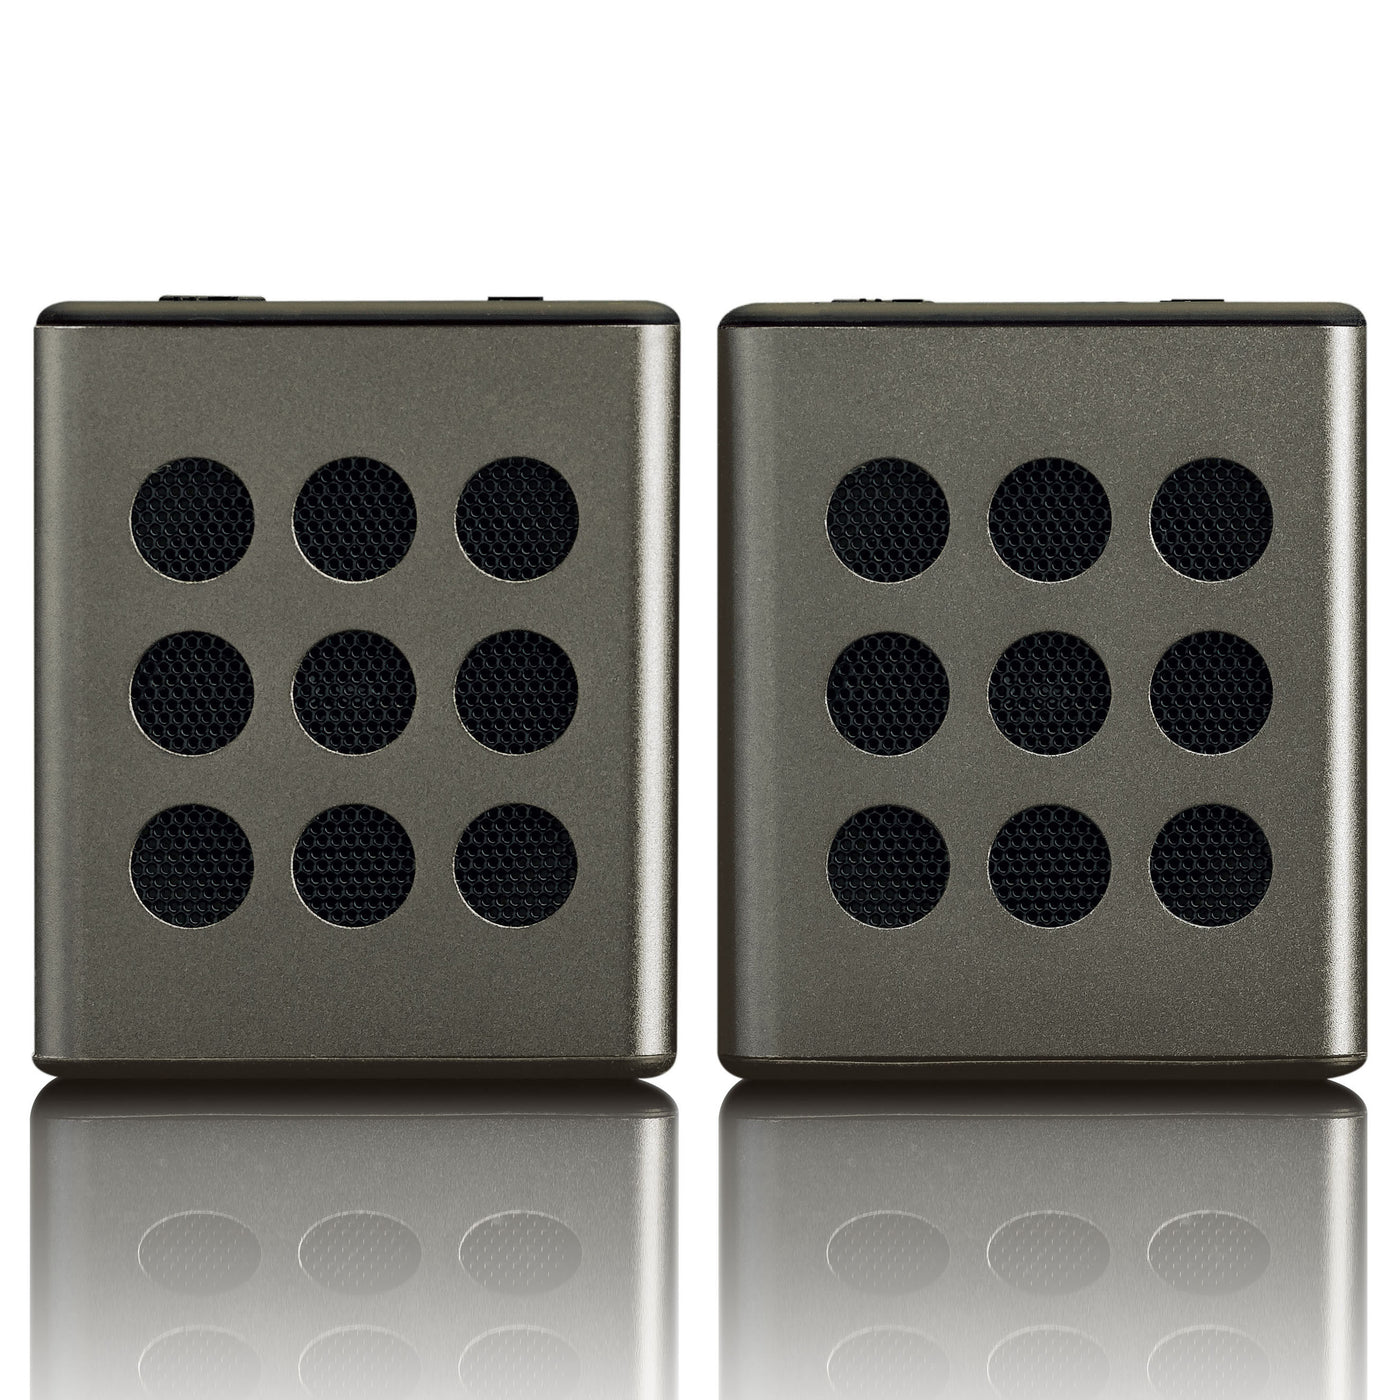 LENCO BTP-200BK - Zestaw głośników stereo Bluetooth® z 8 godzinami odtwarzania z akcesoriami - Szary